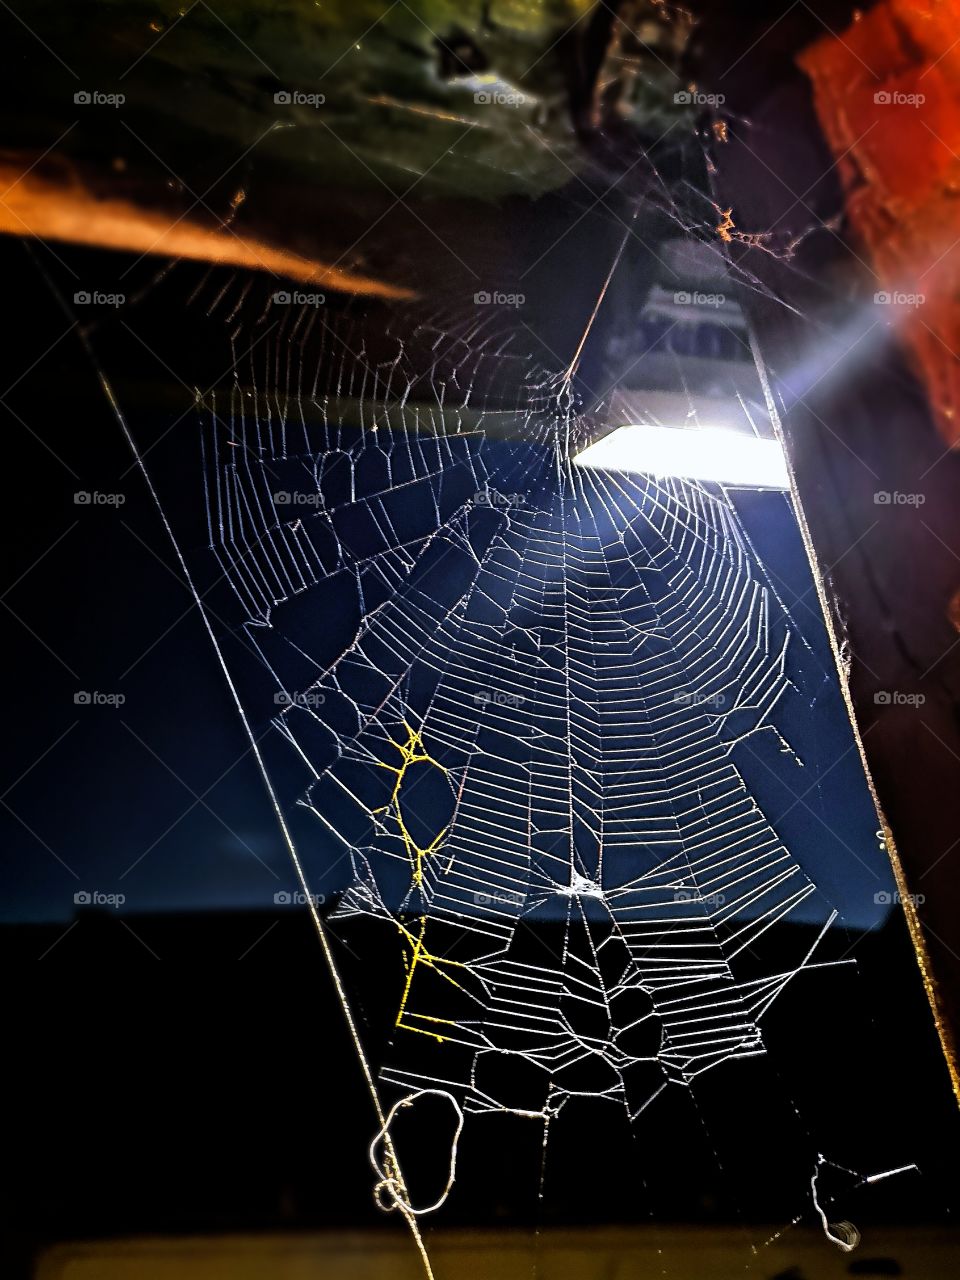 Spider web in the dark